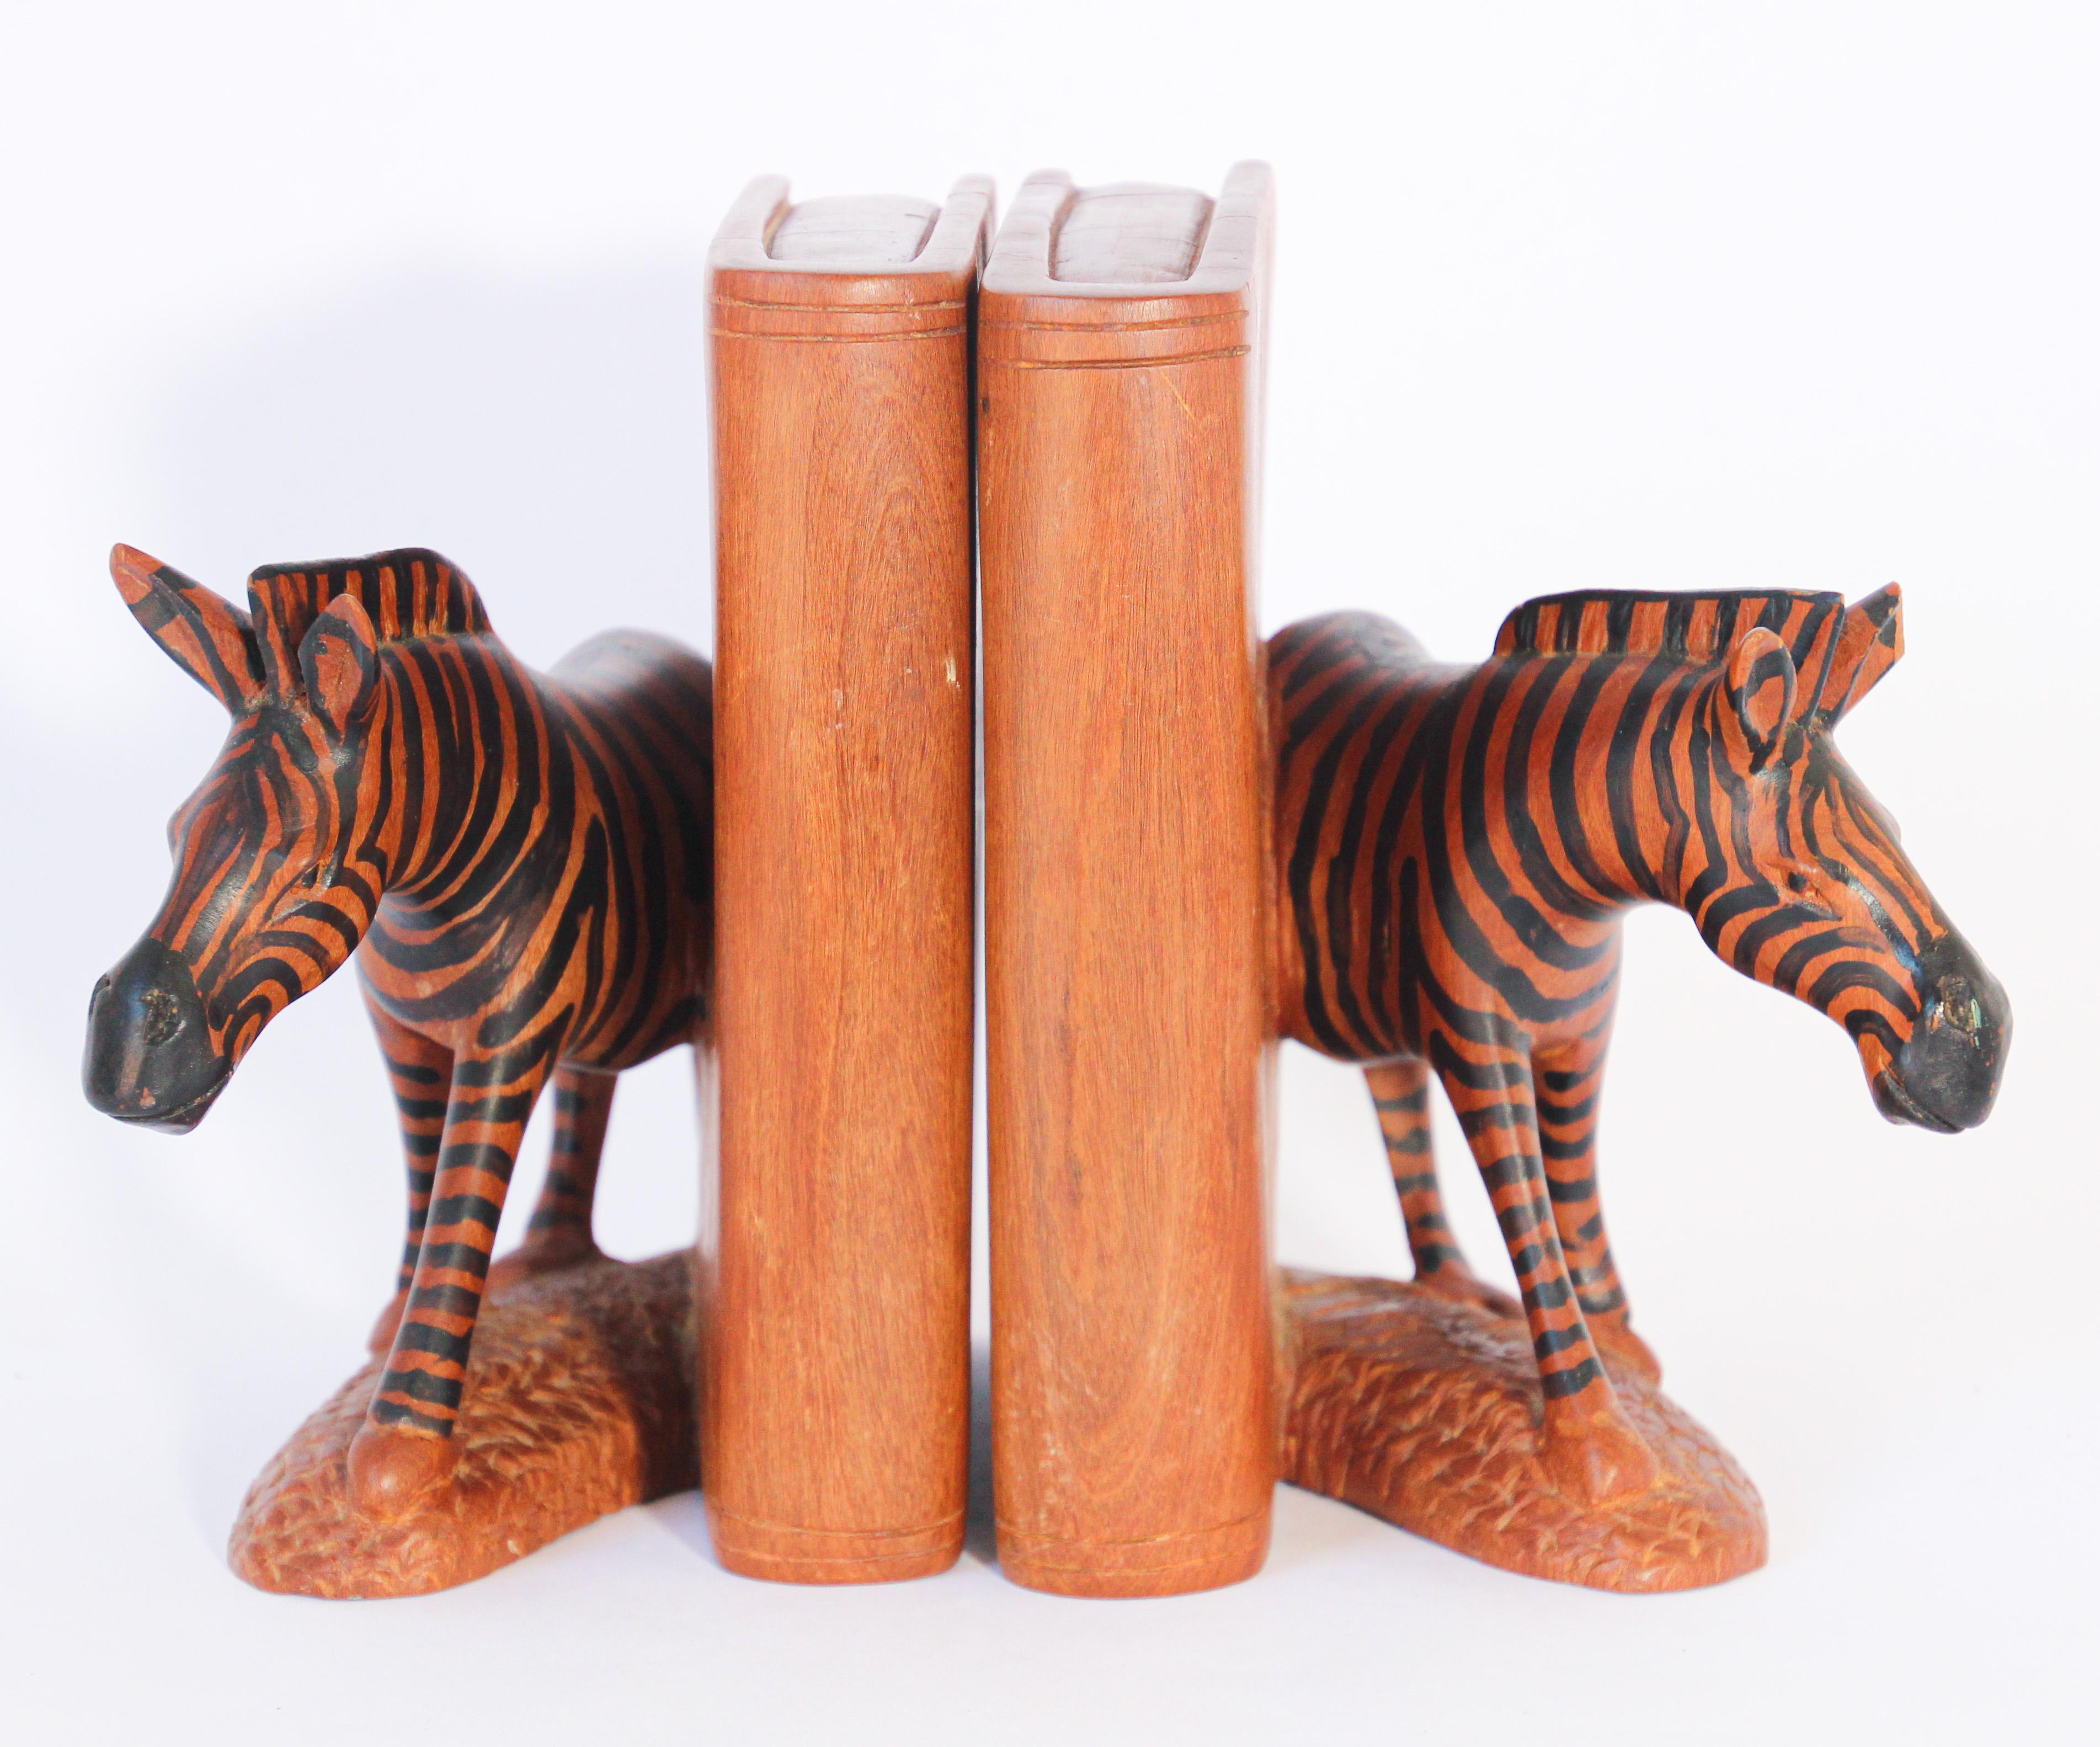 Jolie paire de serre-livres en bois lourd sculpté à la main. Sculptures de zèbres africains.
Ce serre-livres éléphant finement détaillé, sculpté et peint à la main.
Chaque sculpture de zèbre avec base et côté est fabriquée à la main à partir d'une